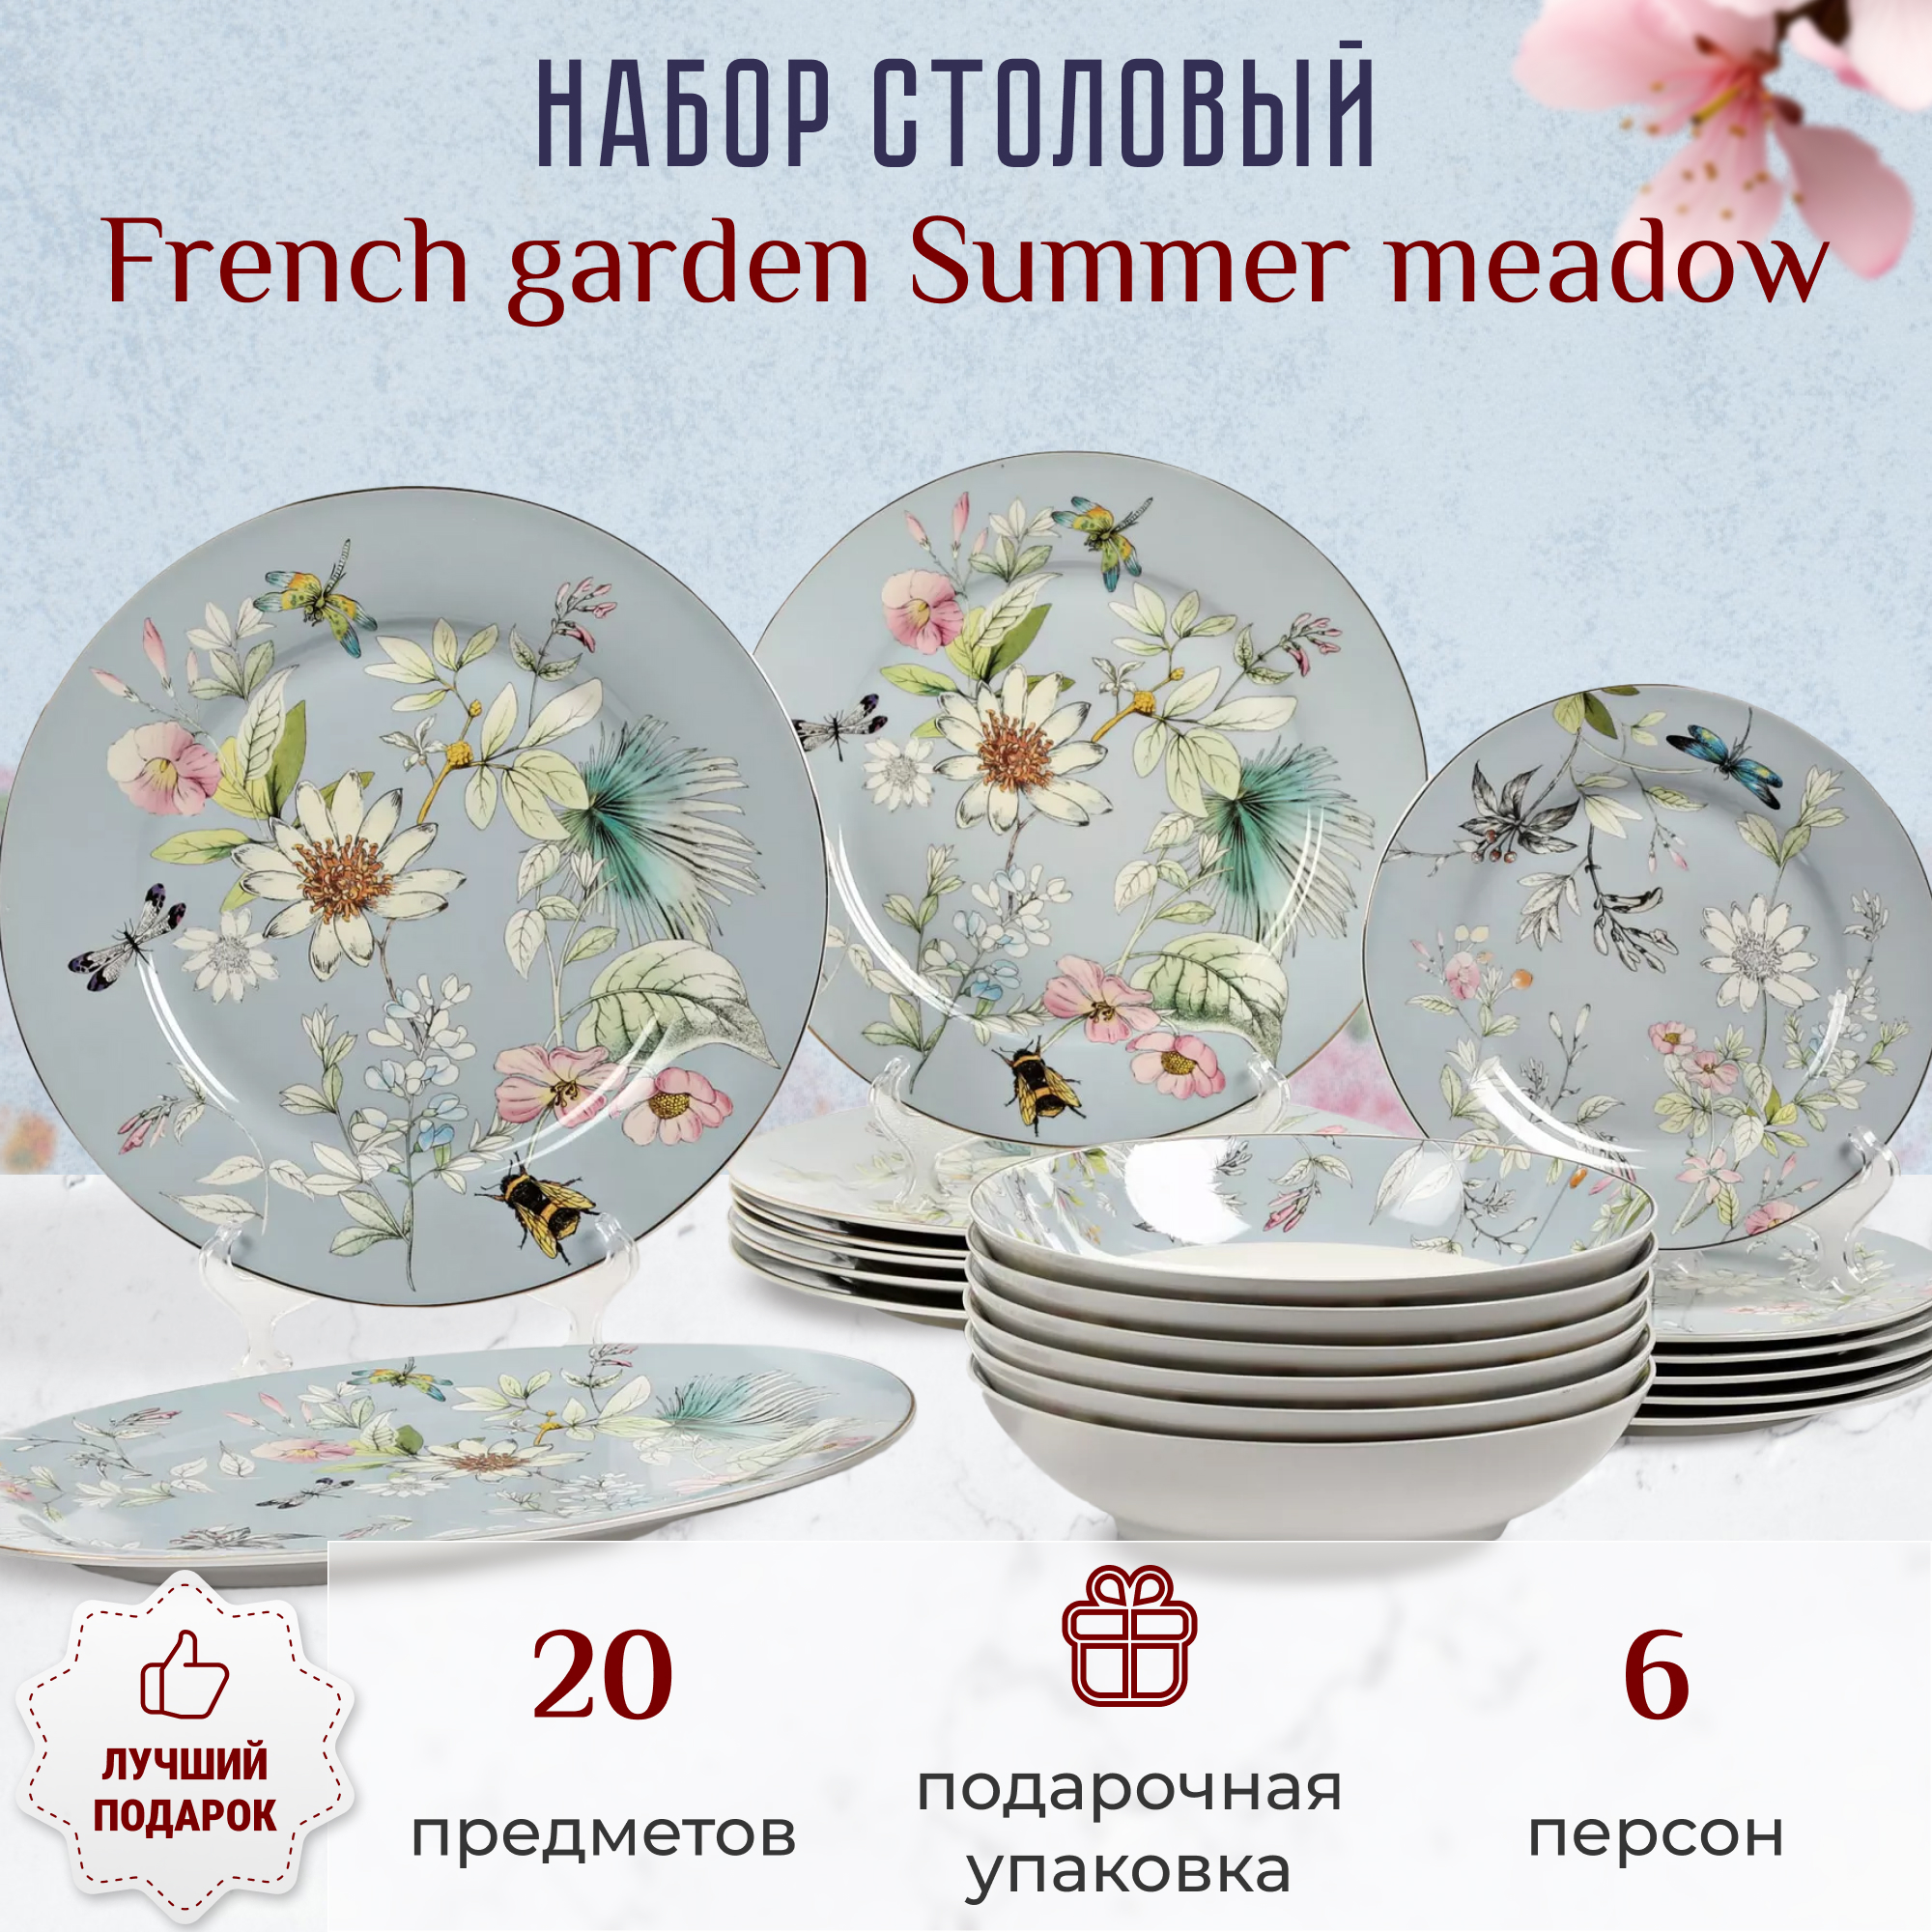 фото Набор столовый french garden summer meadow 6 персон 20 предметов